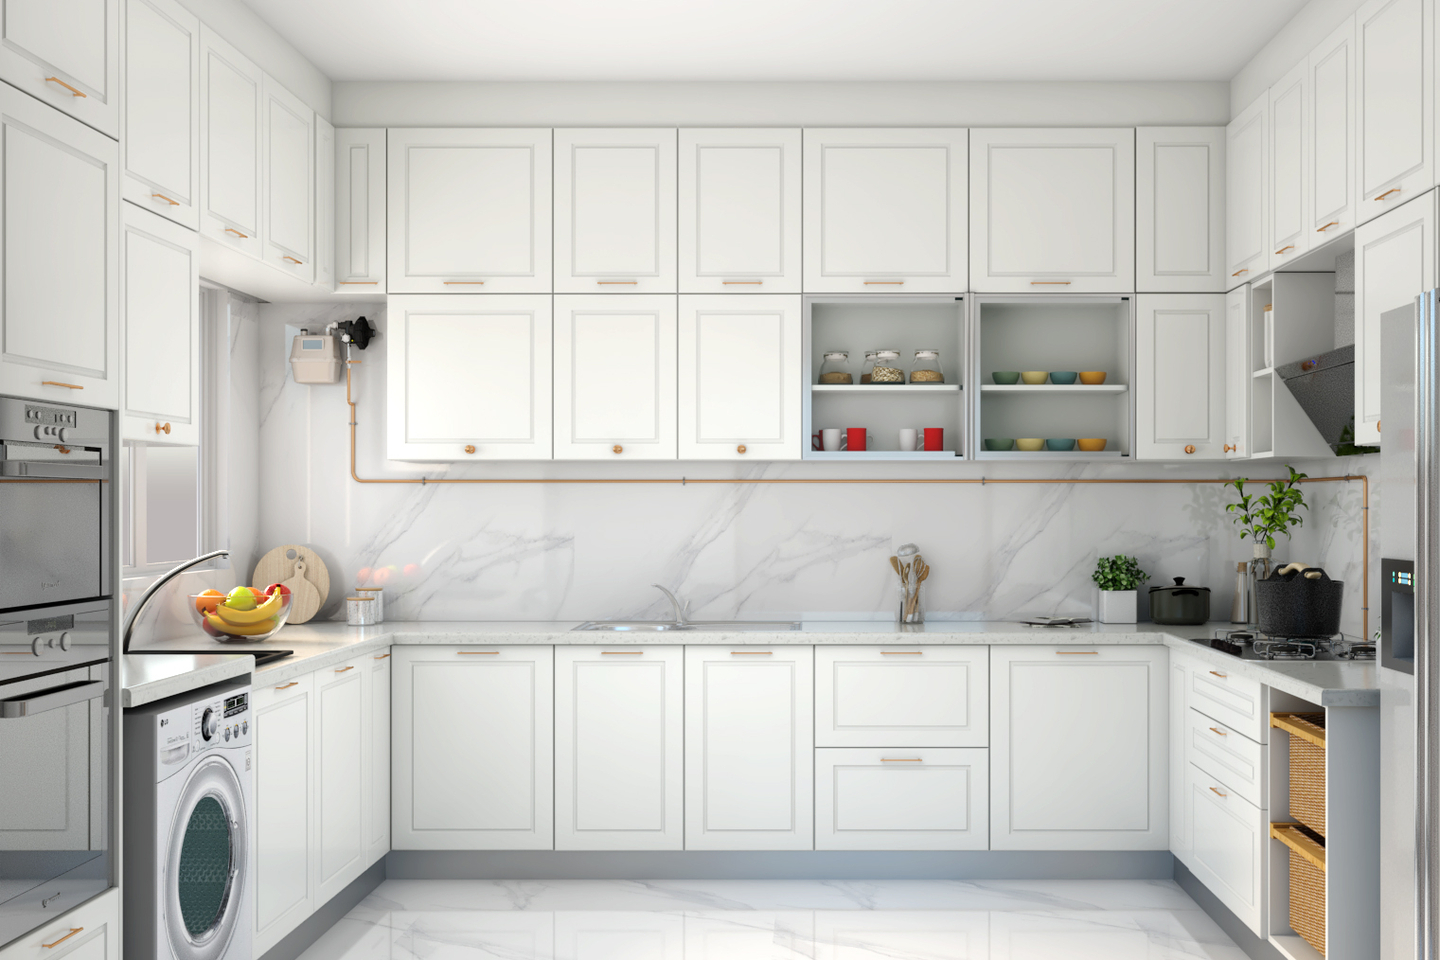 Spacious Kitchen With Modular White Theme - Livspace